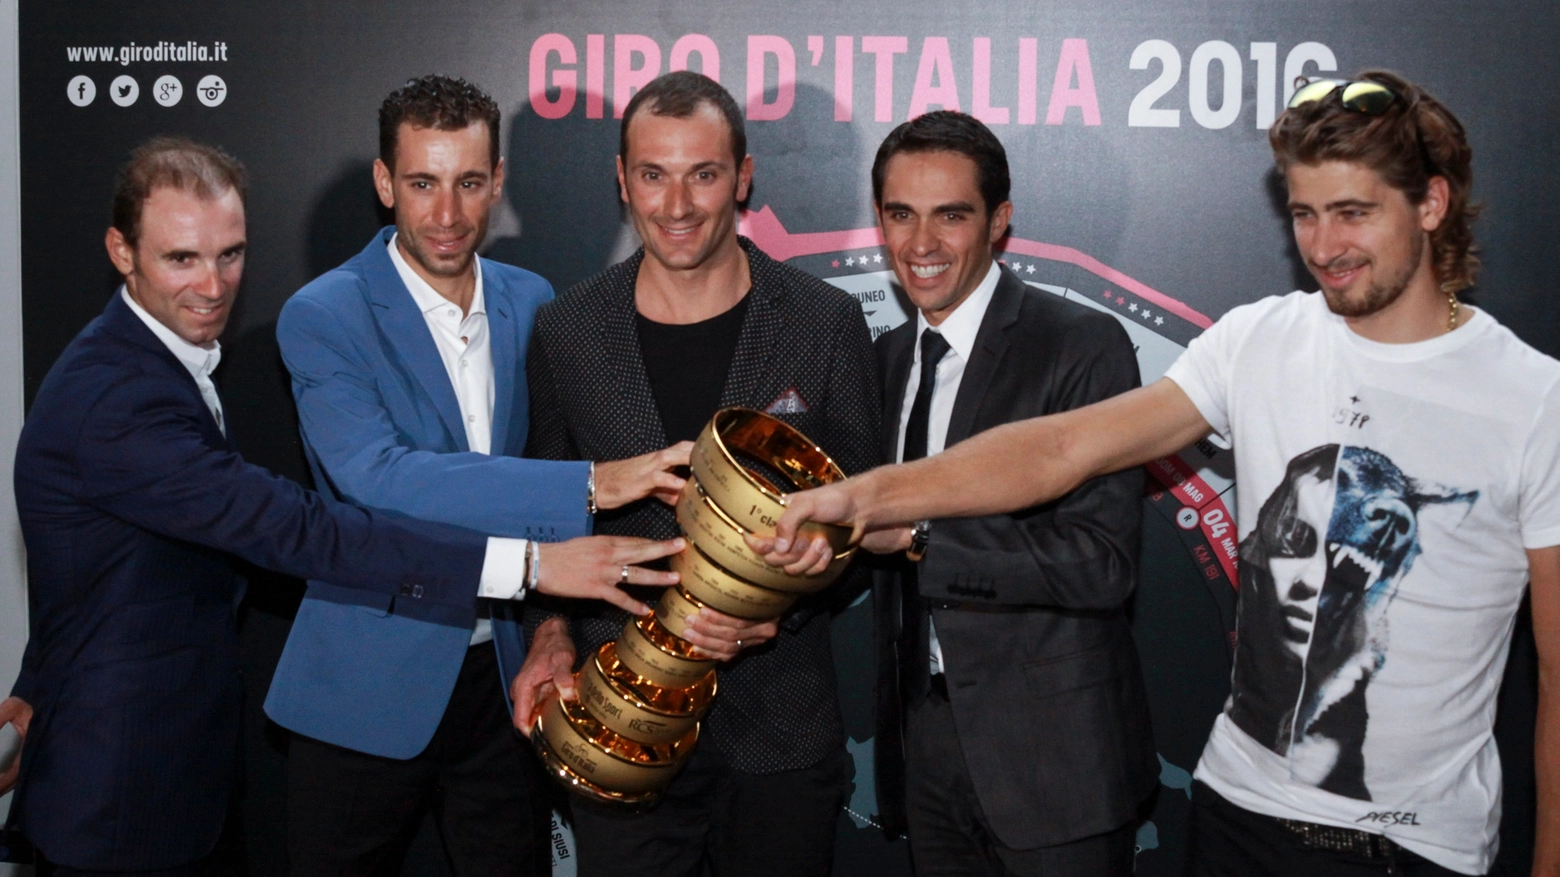 La presentazione del giro d'Italia 2016: Nibali, Valverde, Basso, Sagan e Contador con il trofeo